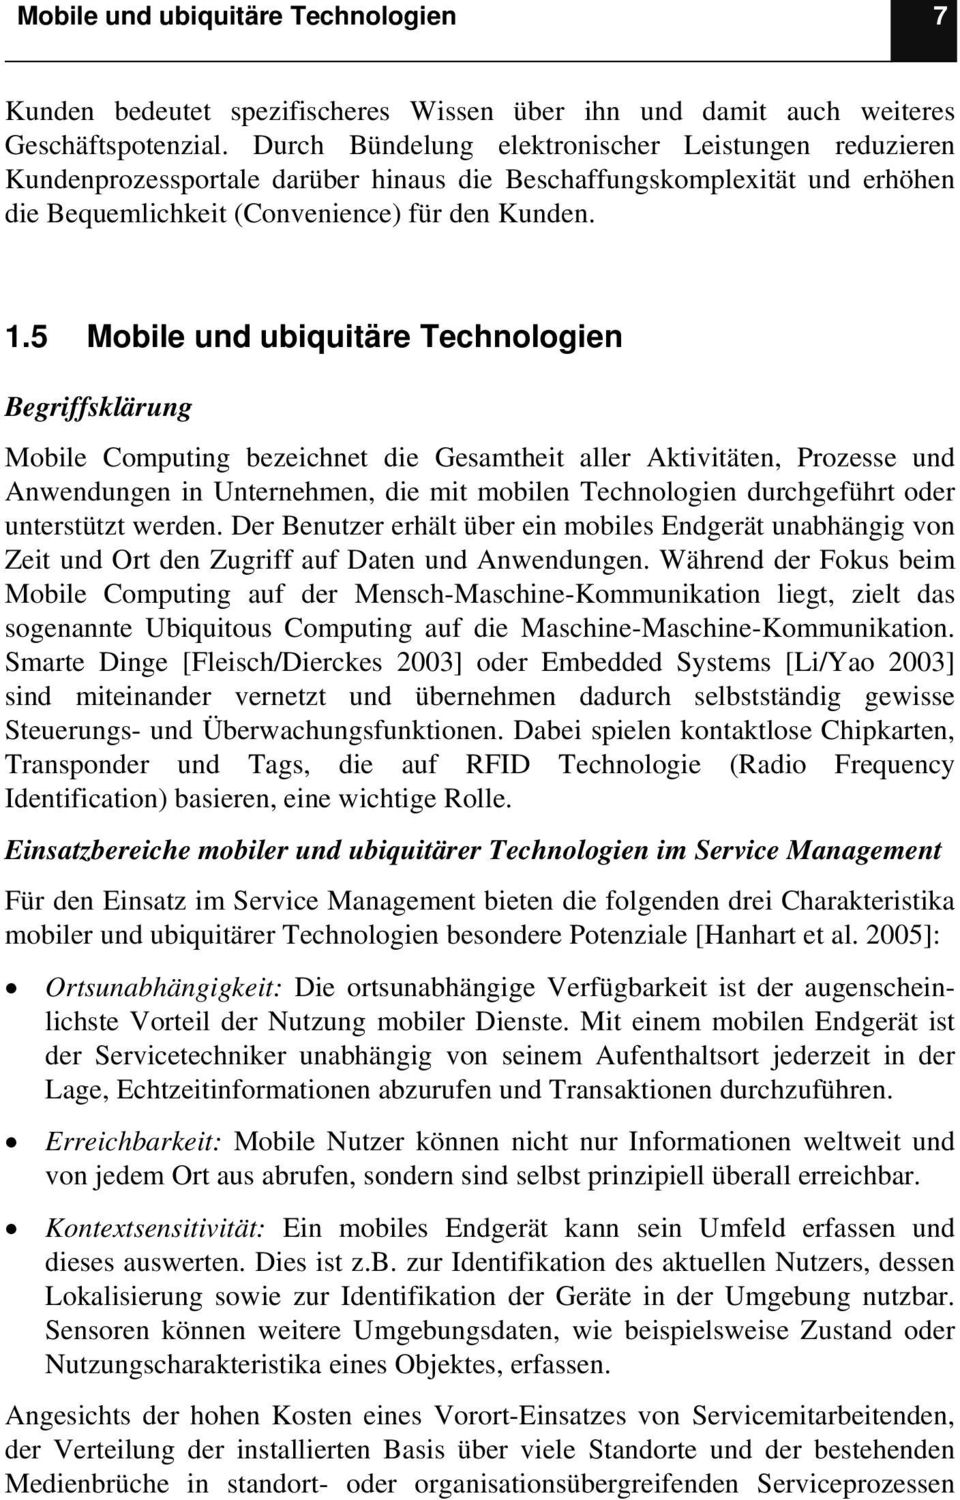 5 Mobile und ubiquitäre Technologien Begriffsklärung Mobile Computing bezeichnet die Gesamtheit aller Aktivitäten, Prozesse und Anwendungen in Unternehmen, die mit mobilen Technologien durchgeführt